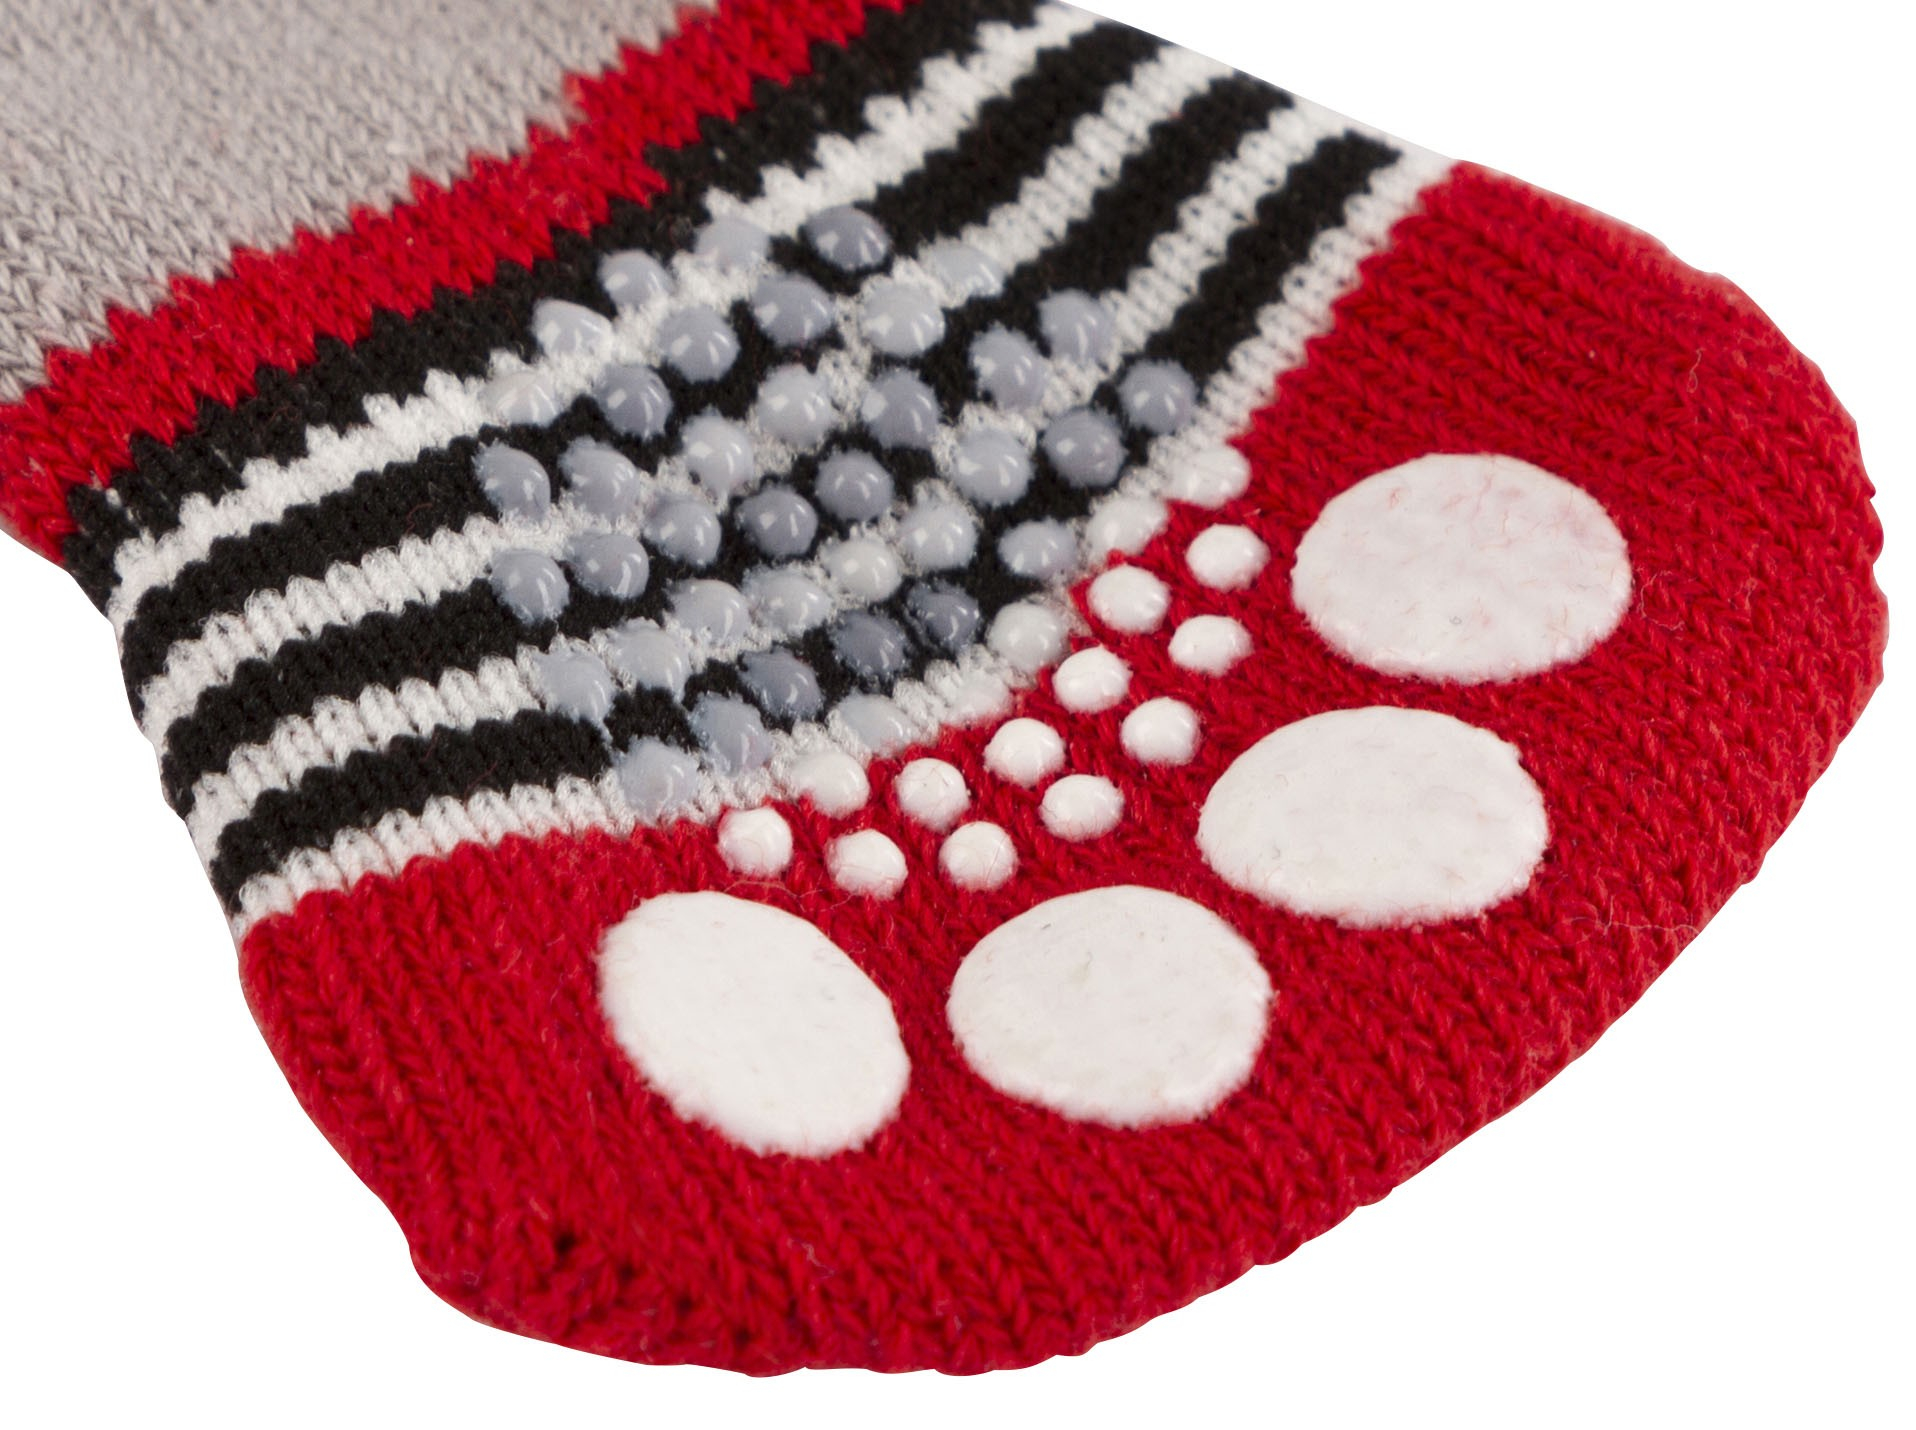 Socken für Hunde Bruno in grau/rot